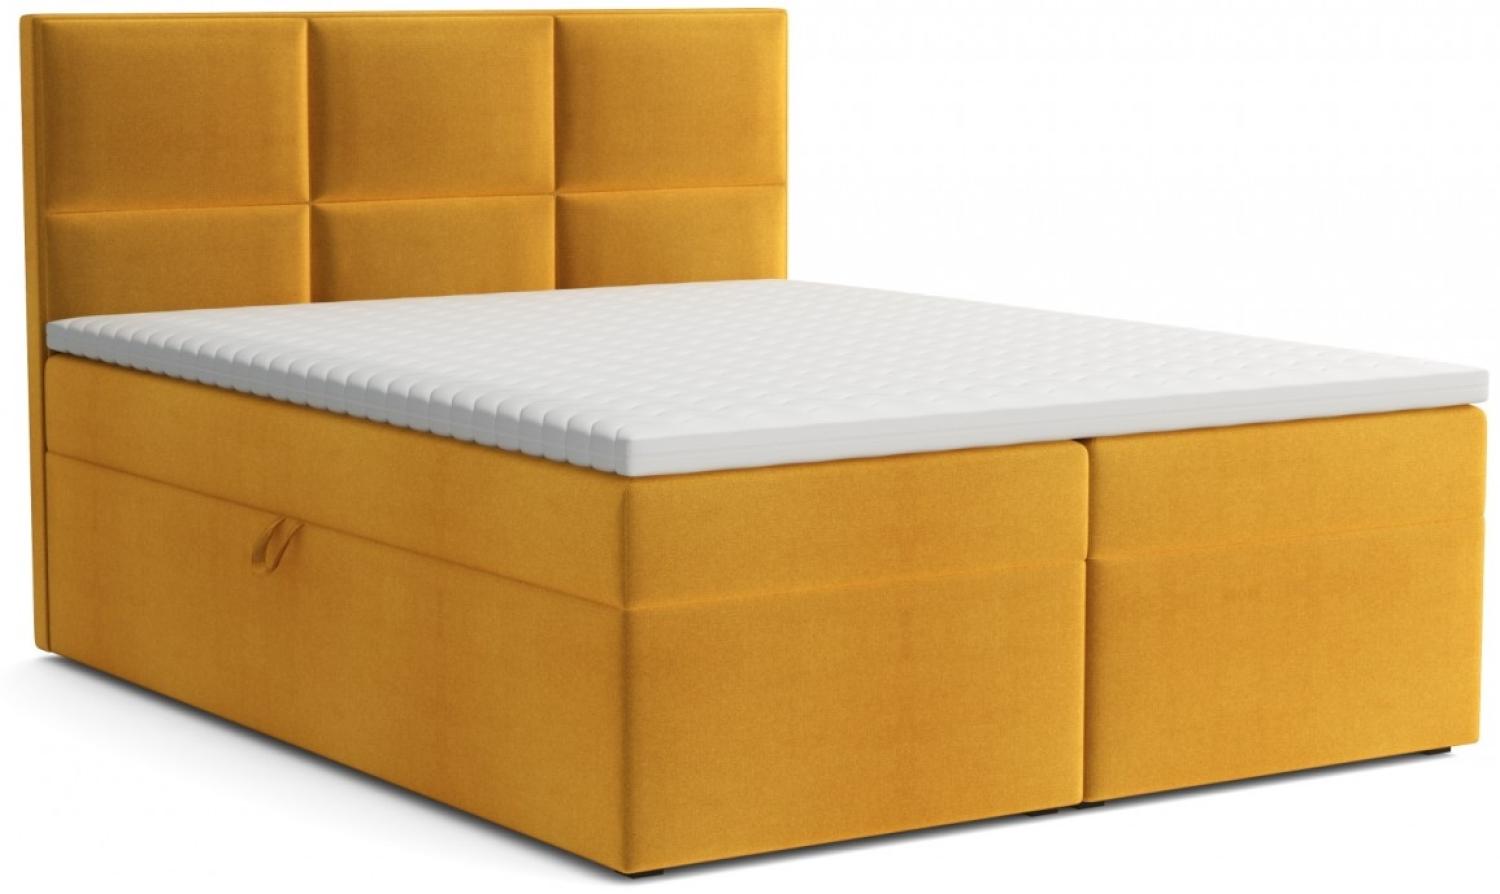 Boxspringbett Bobly mit zwei Bettkasten und Topper gelb 160 x 200 cm Bild 1